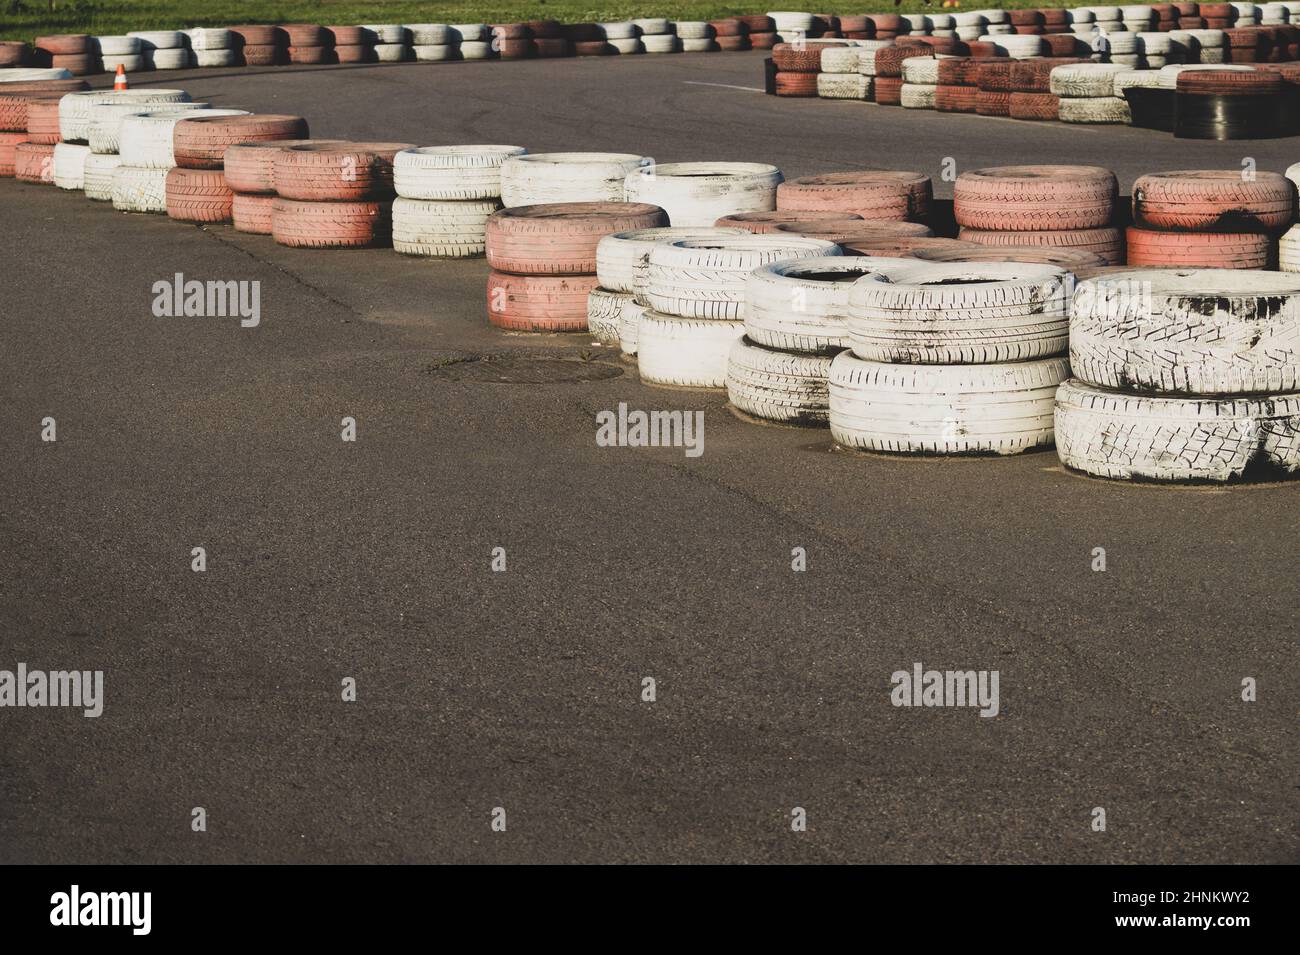 Barrière de sécurité sur piste de course. Piste de course en asphalte avec pneus rouges et blancs. Pile de pneus colorés. Piste de karting Banque D'Images